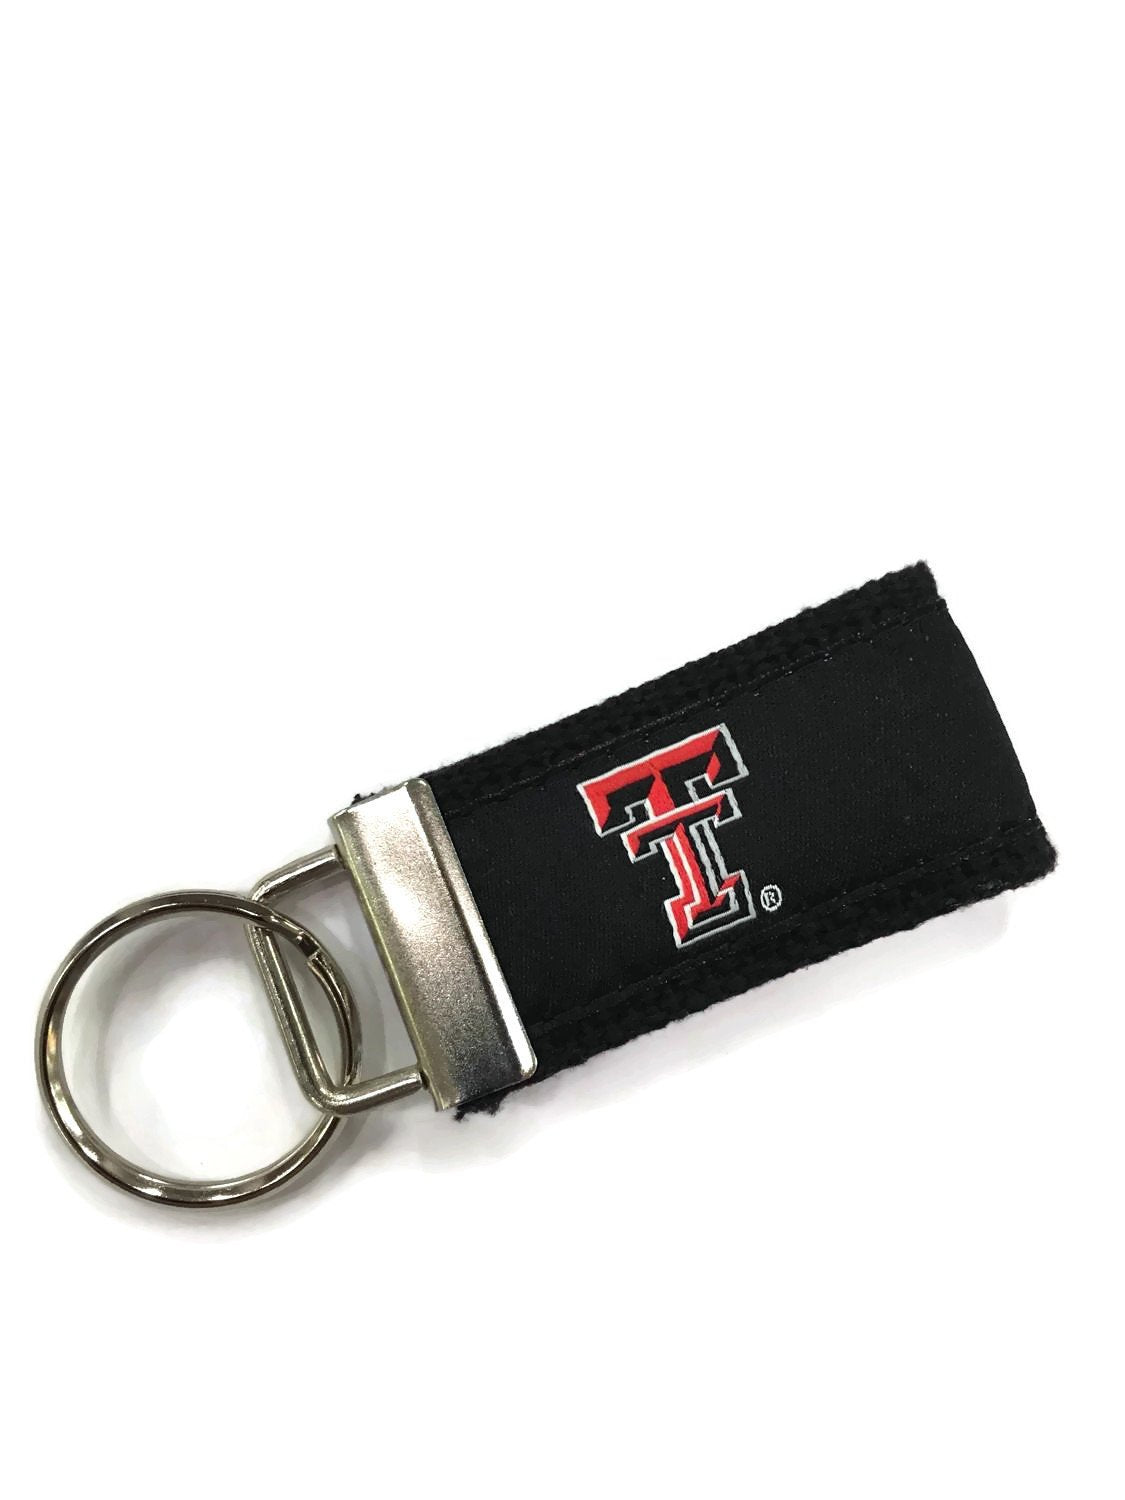 Texas Tec licensed web key chain